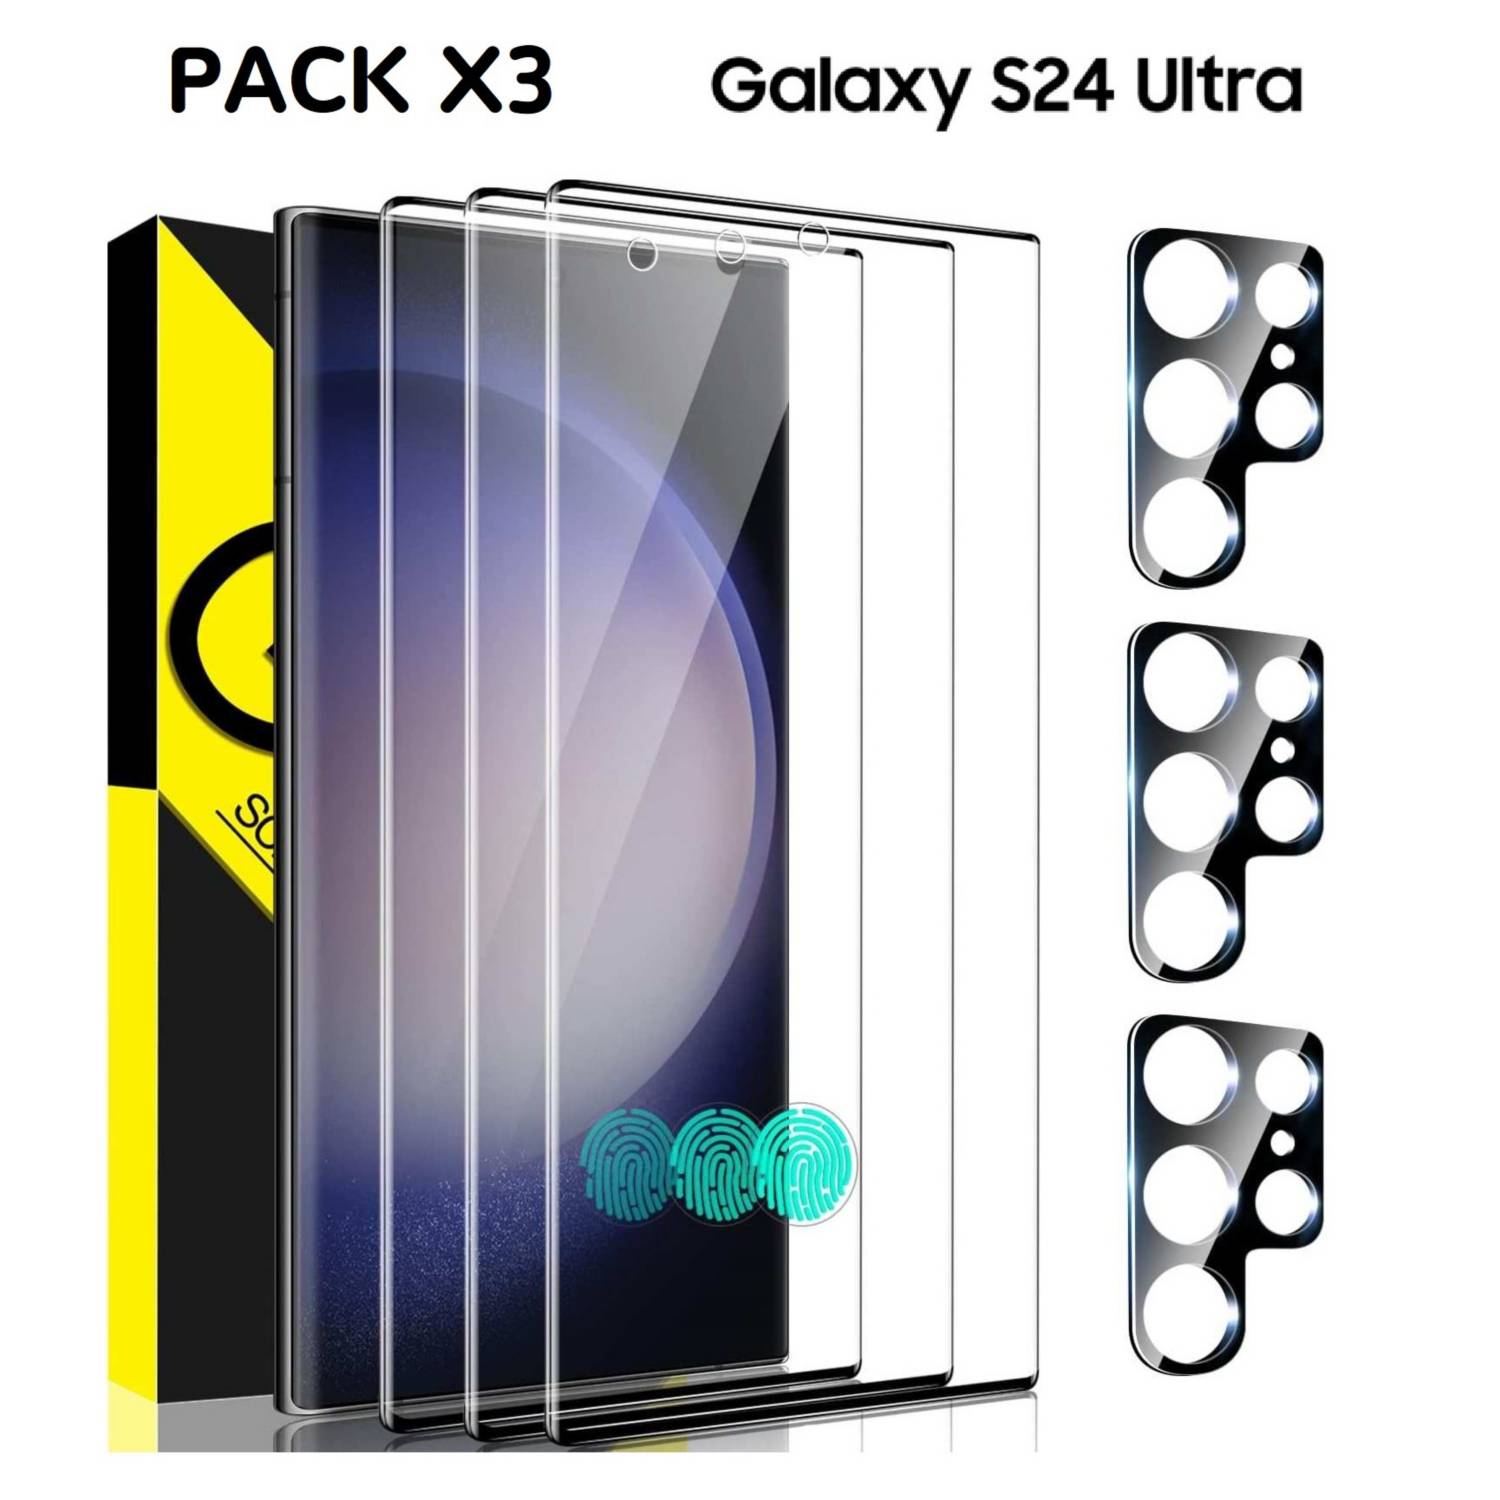 Mica Vidrio Samsung Galaxy S24 ULTRA X3 pack protector pantalla